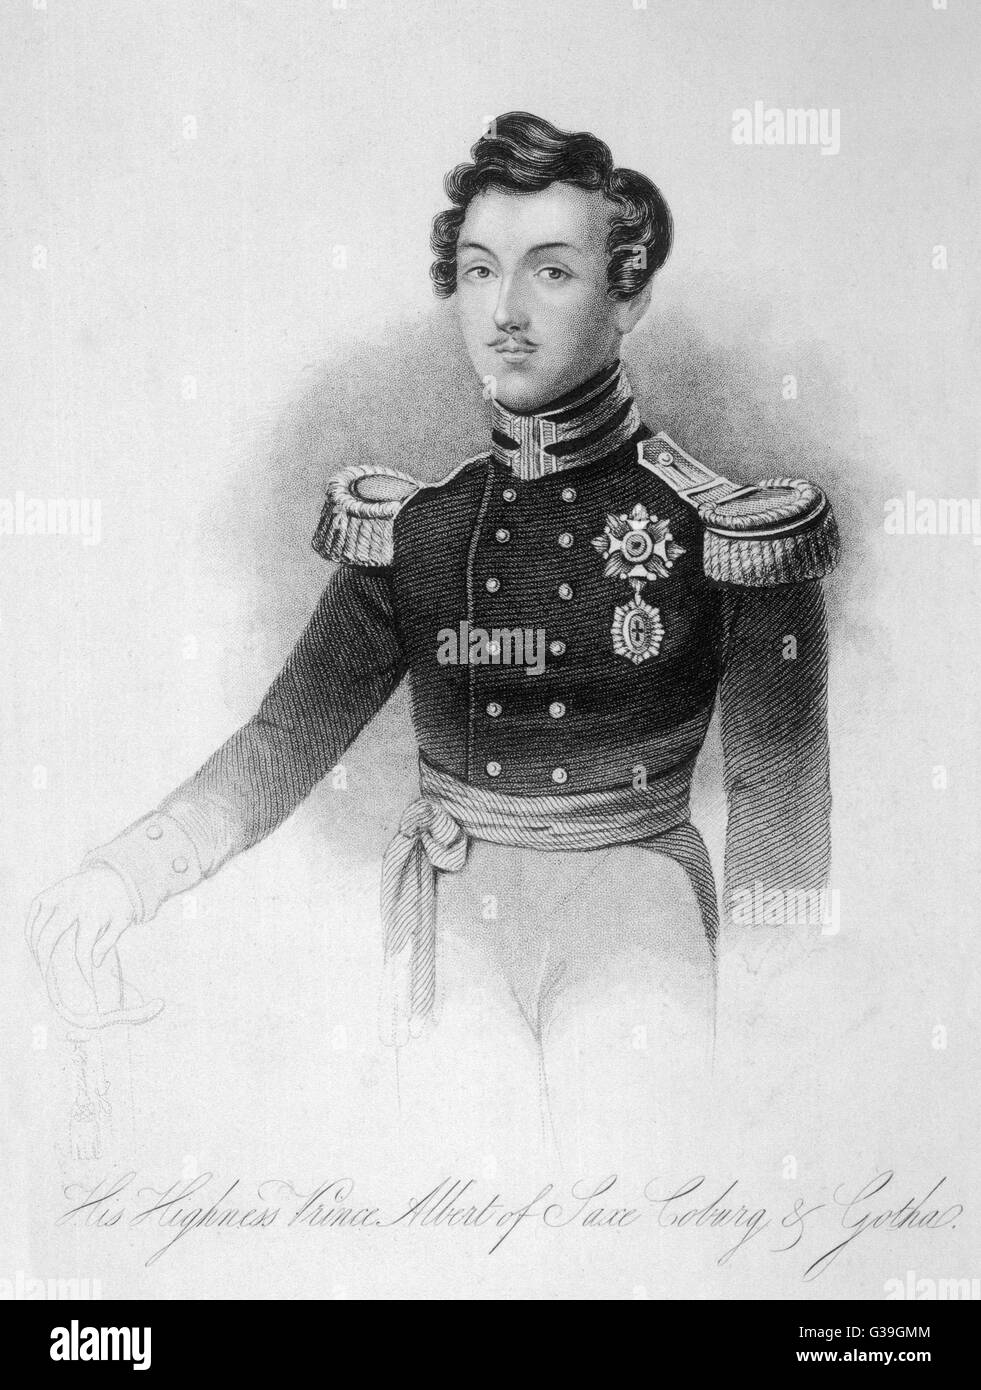 Prinz ALBERT, der Gemahl von Königin VICTORIA Gravur von den schönen jungen Prinzen 3 Jahre vor seiner Ehe mit Victoria.     Datum: 1819-1861 Stockfoto